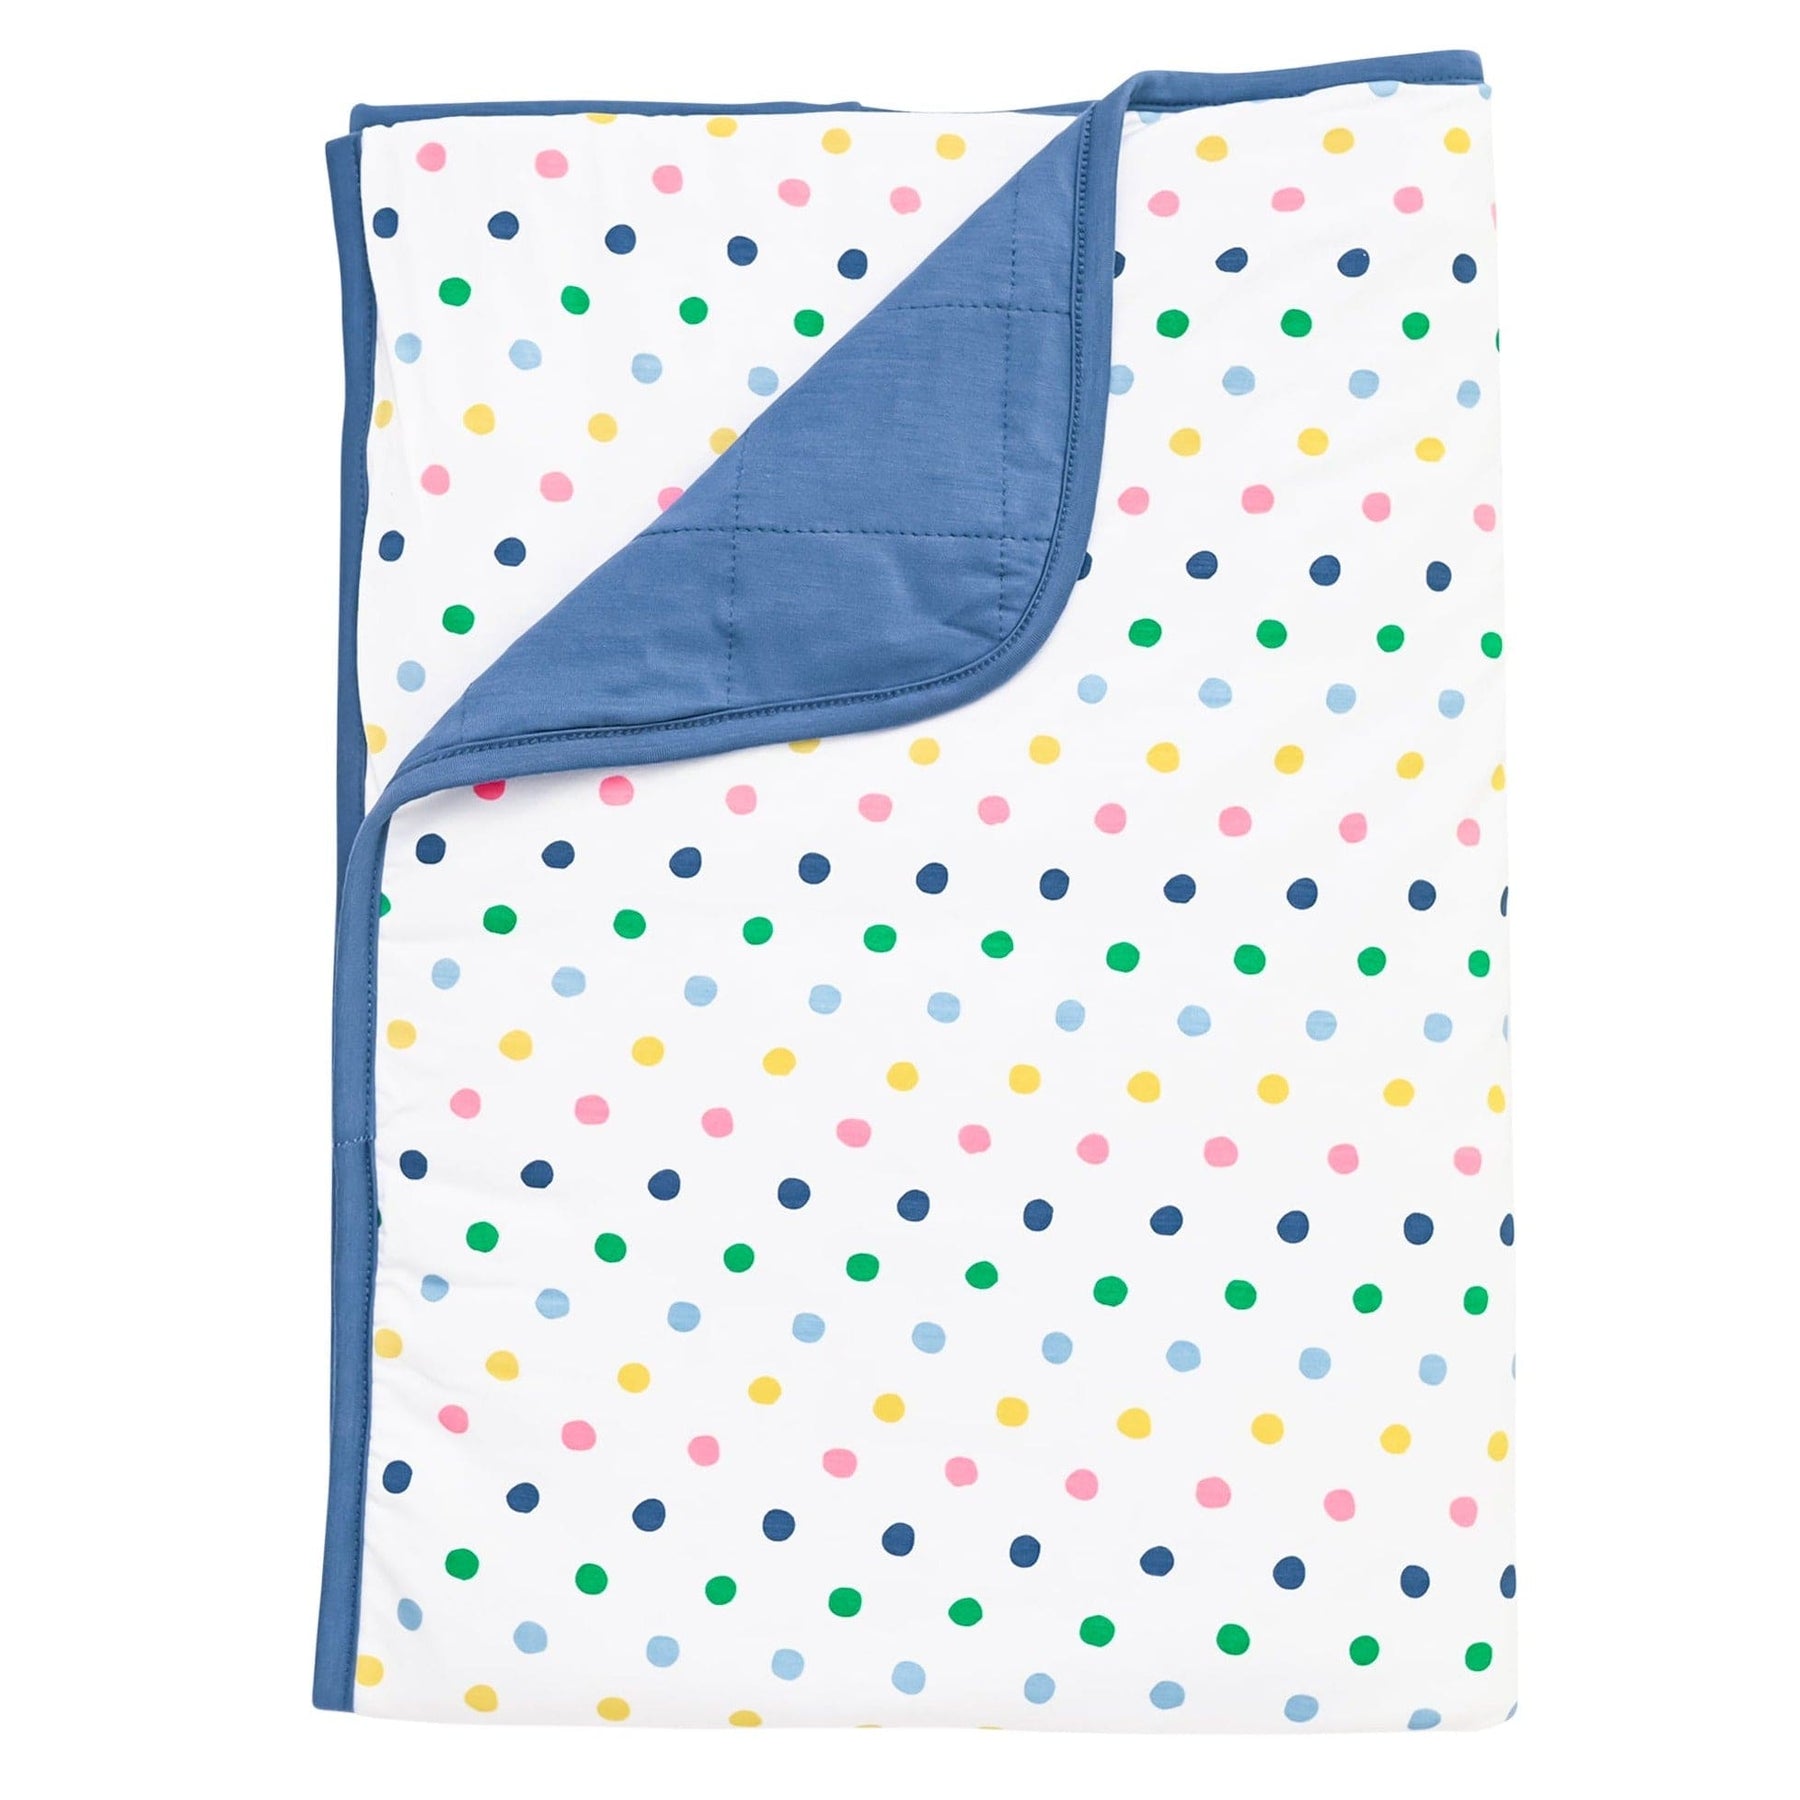 Kyte BABY Toddler Blanket in Spring Polka Dots